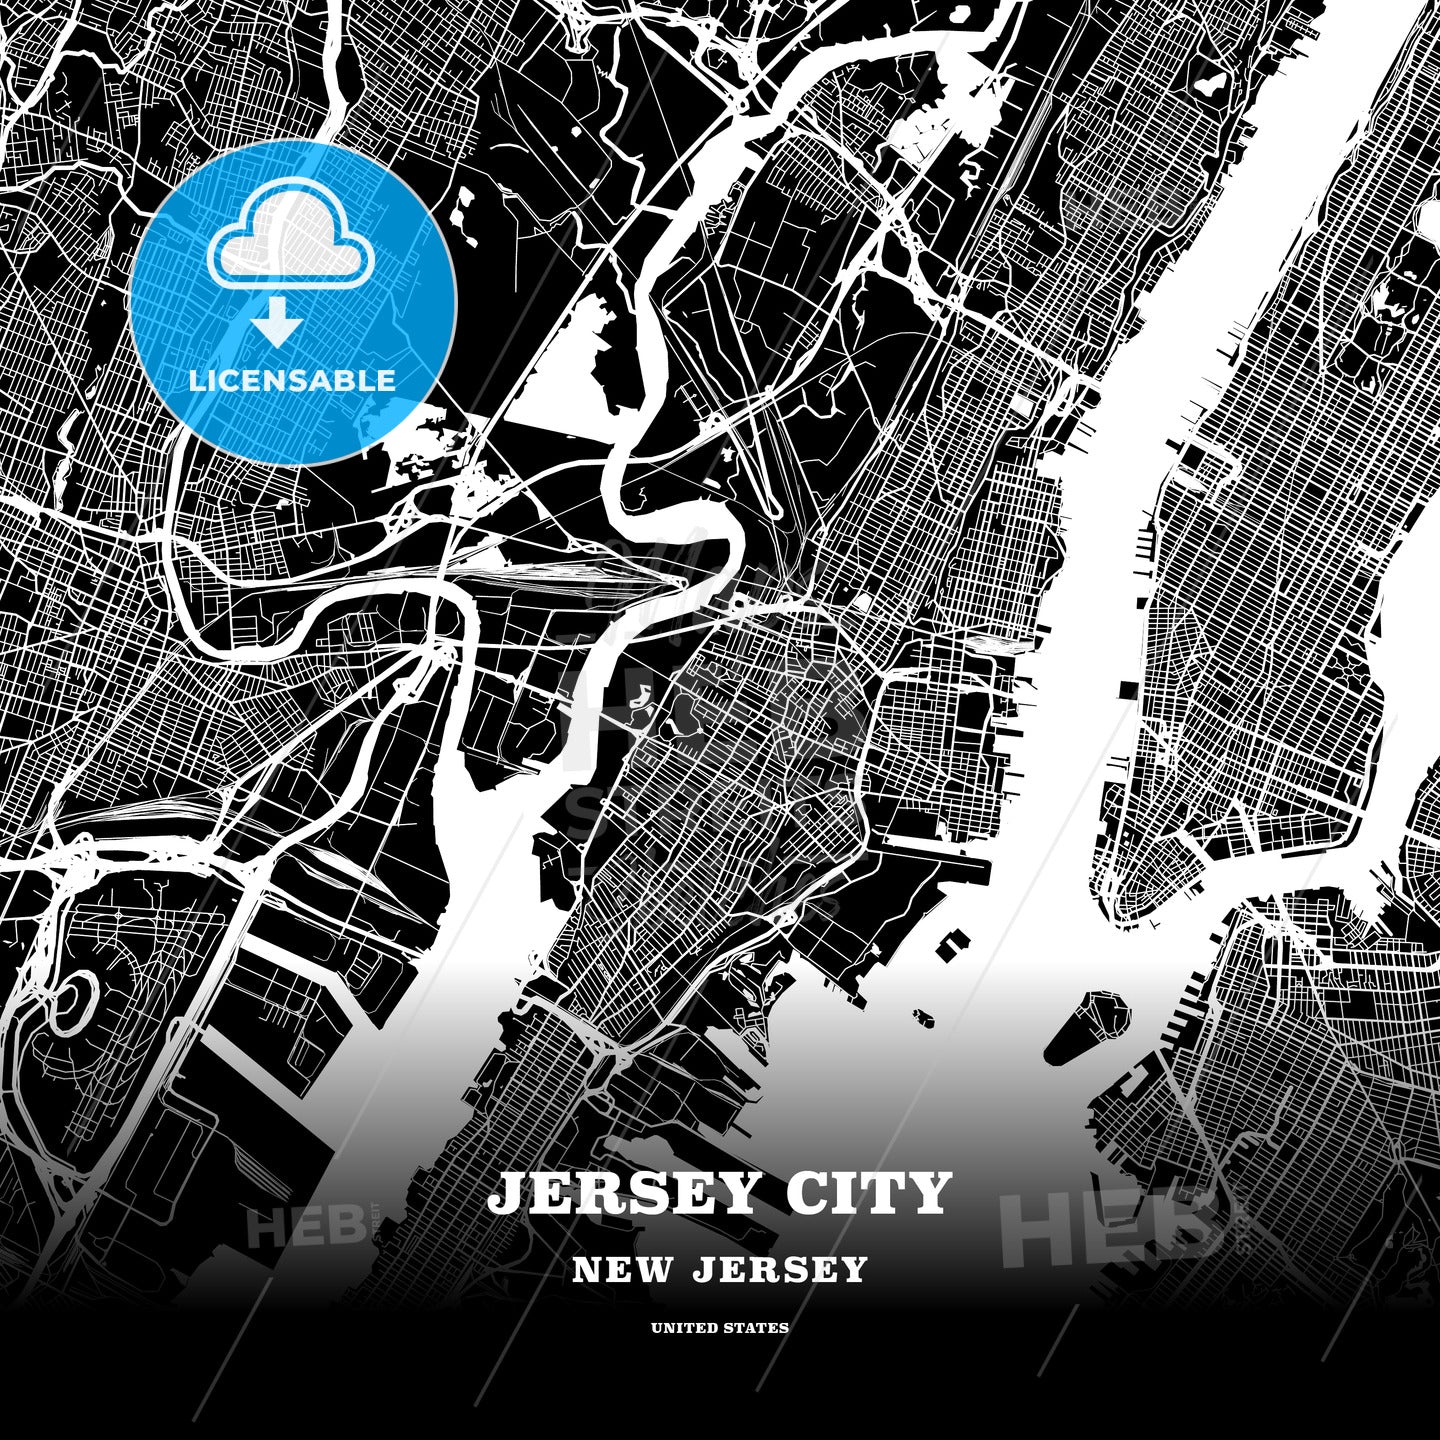 Jersey City, New Jersey, USA map